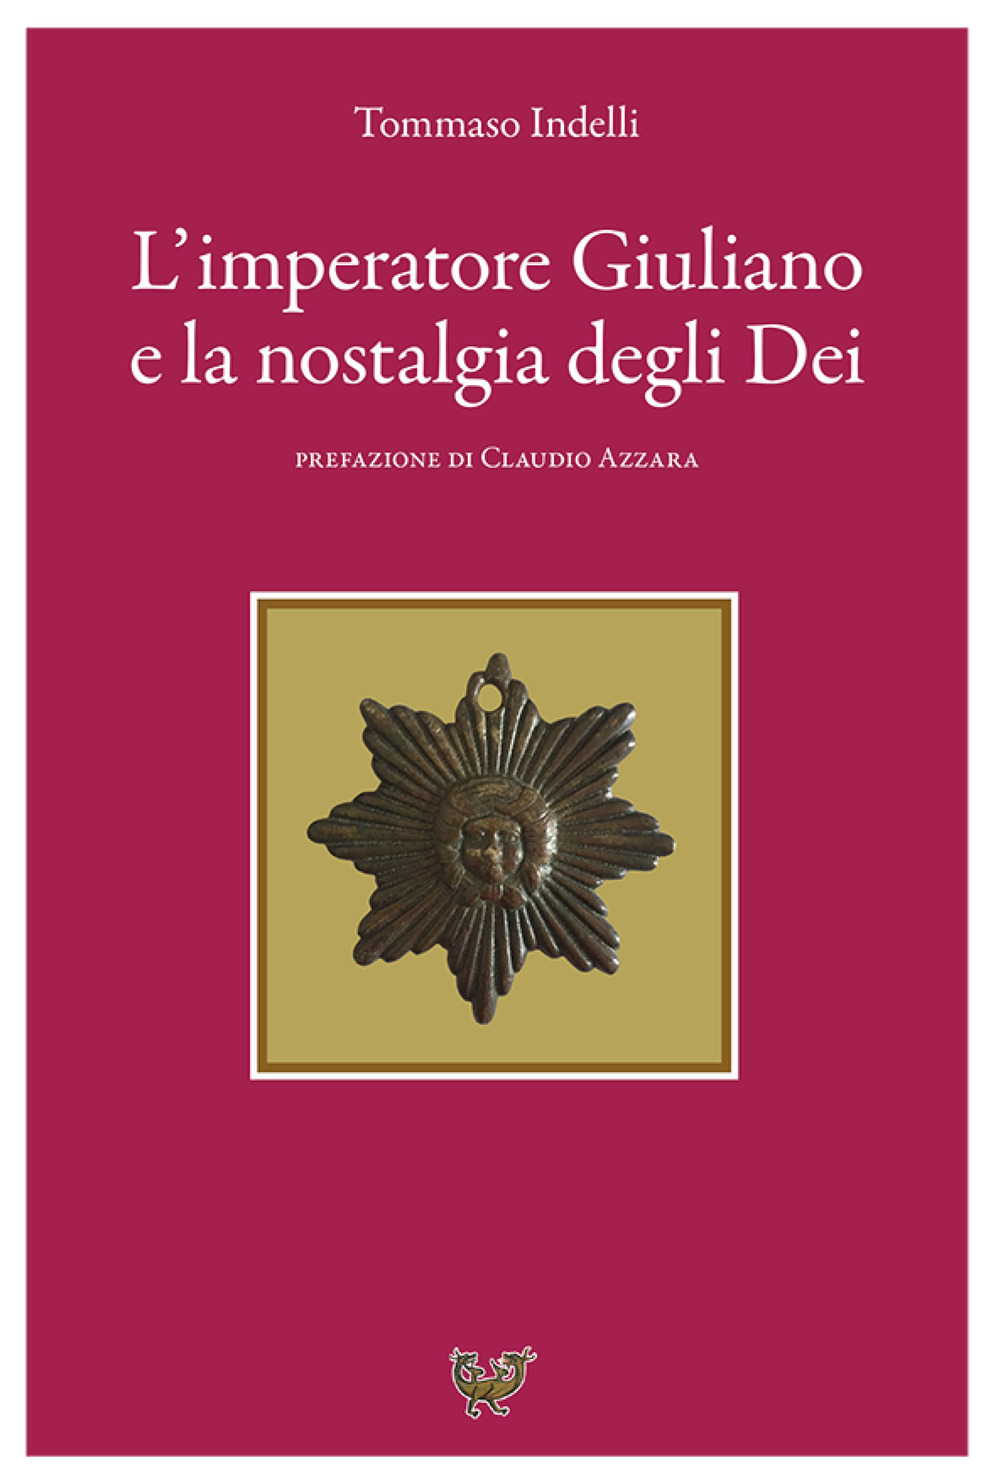 Image of L' imperatore Giuliano e la nostalgia degli dei